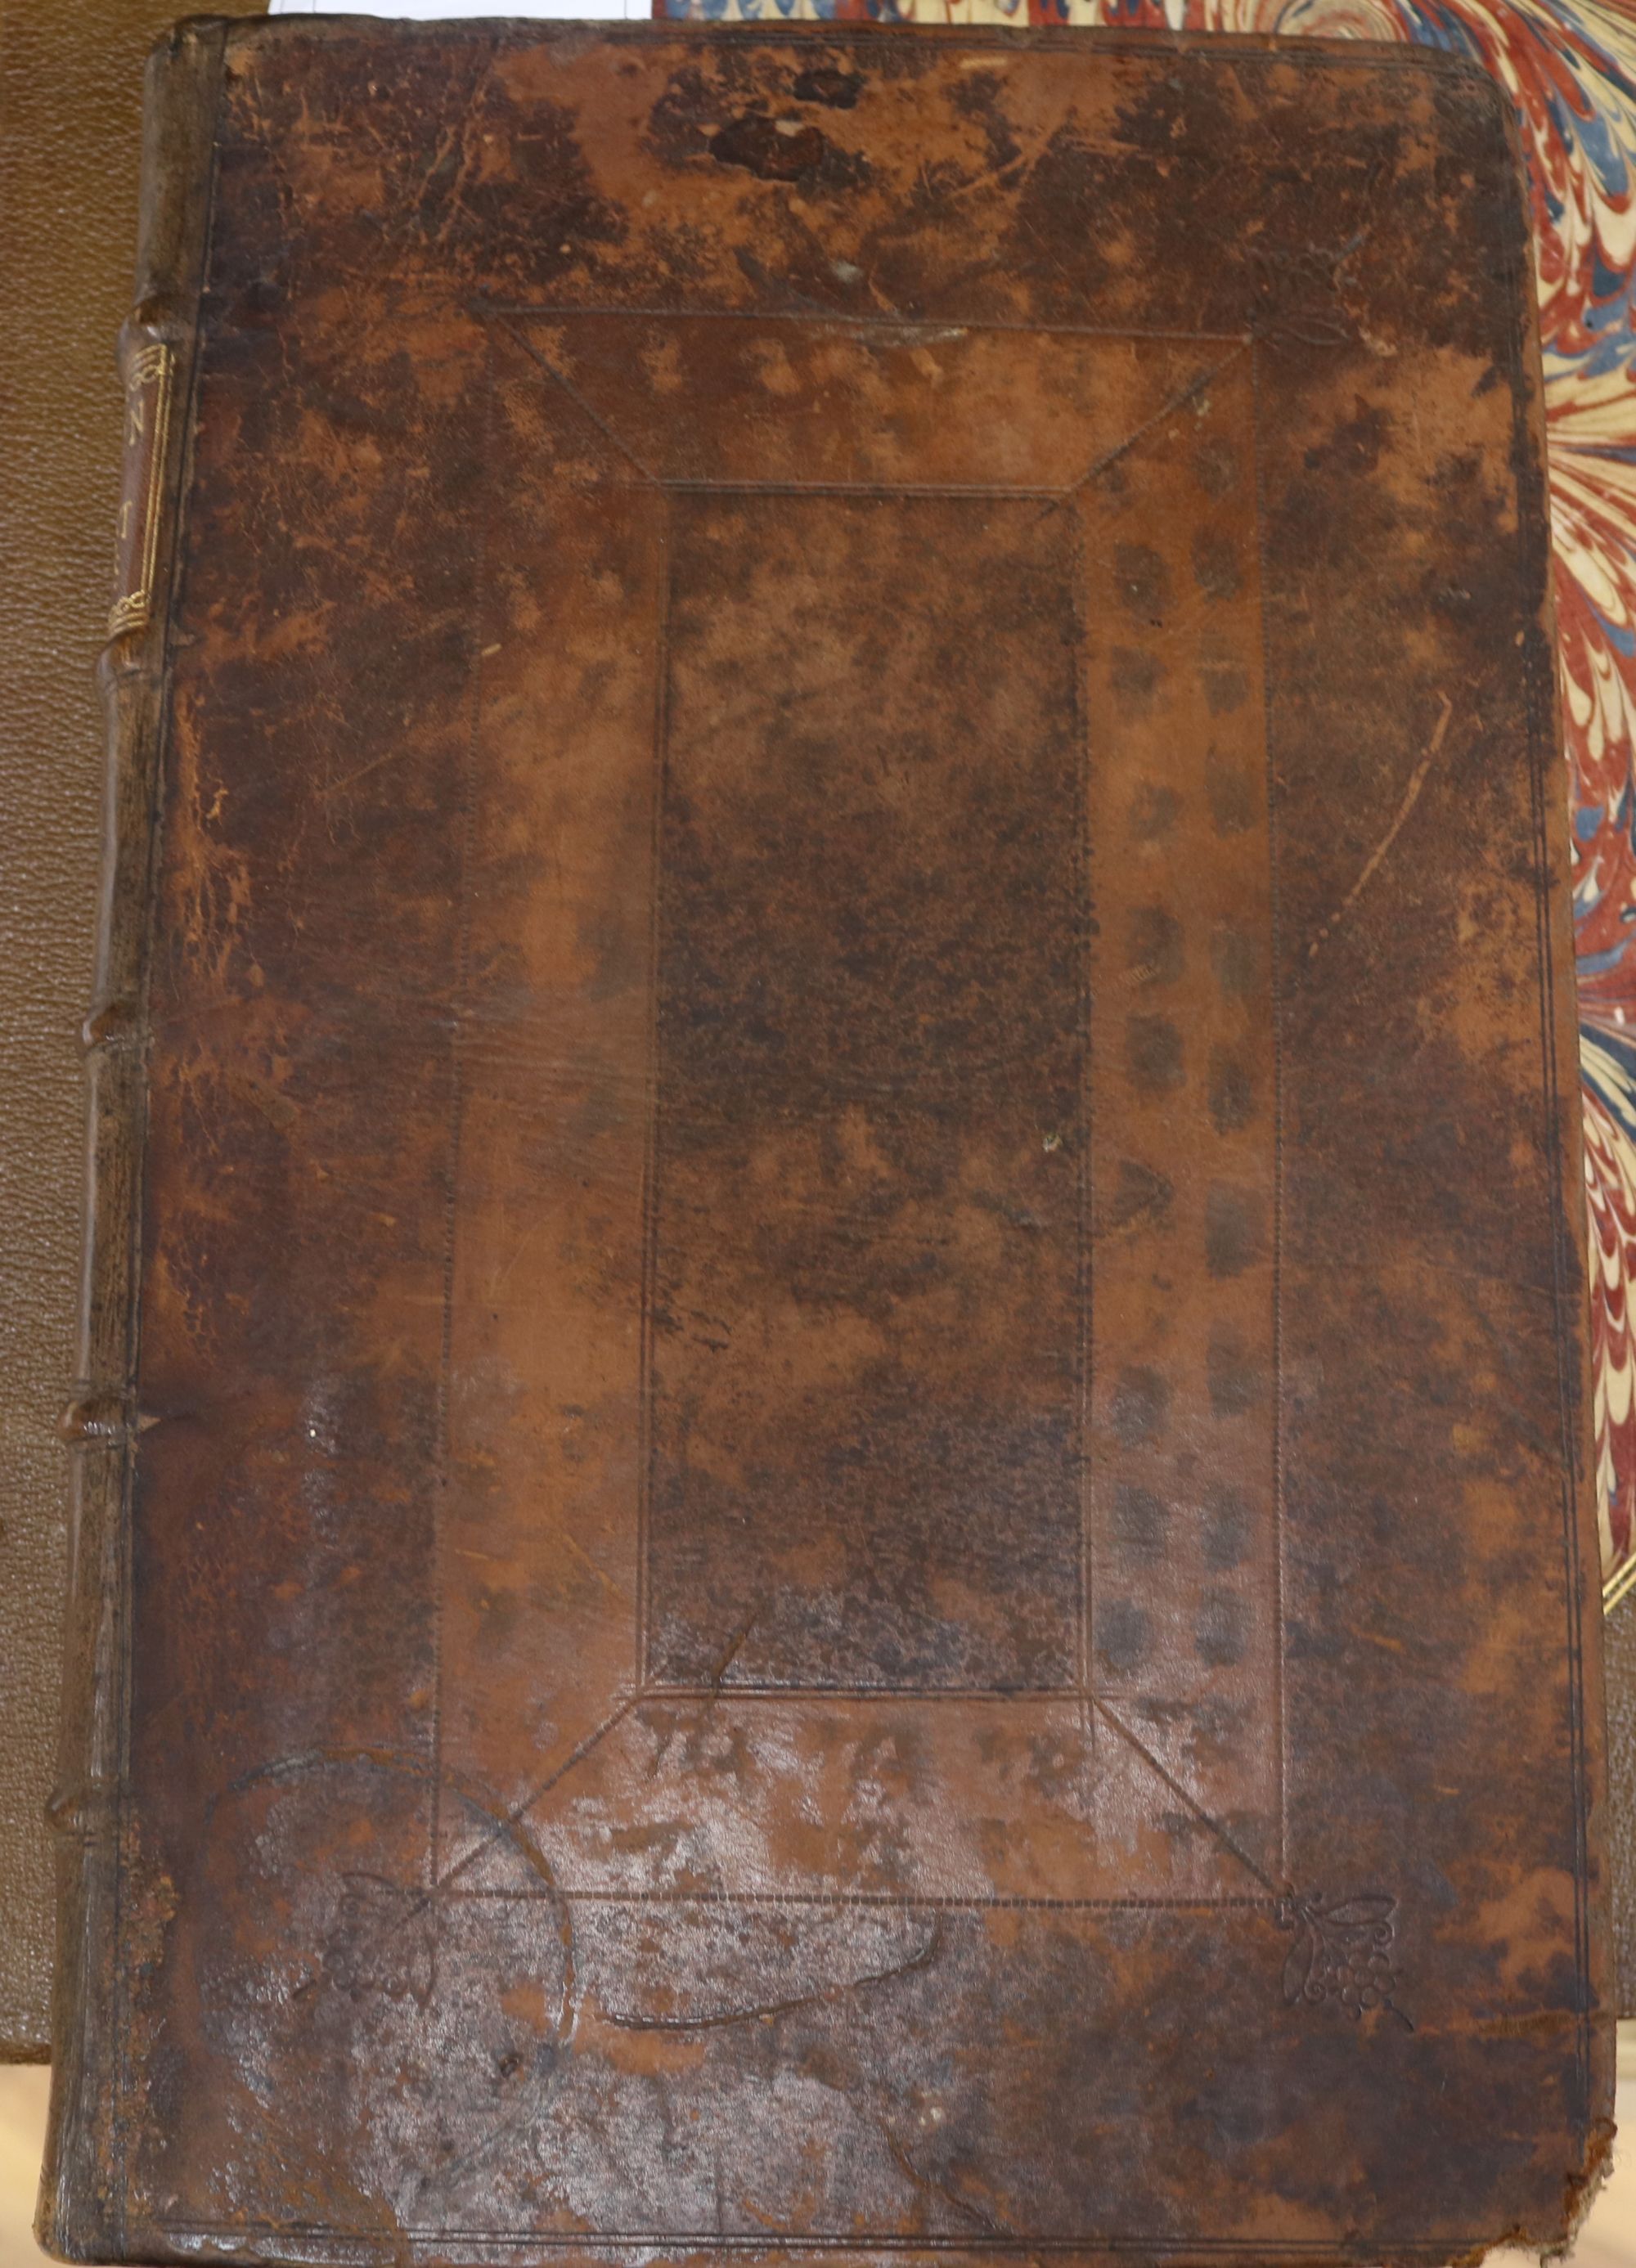 Evelyn, John, Sylva, 3rd edition, folio, contemporary calf, rebacked, bound with Kalendarium - Image 2 of 3